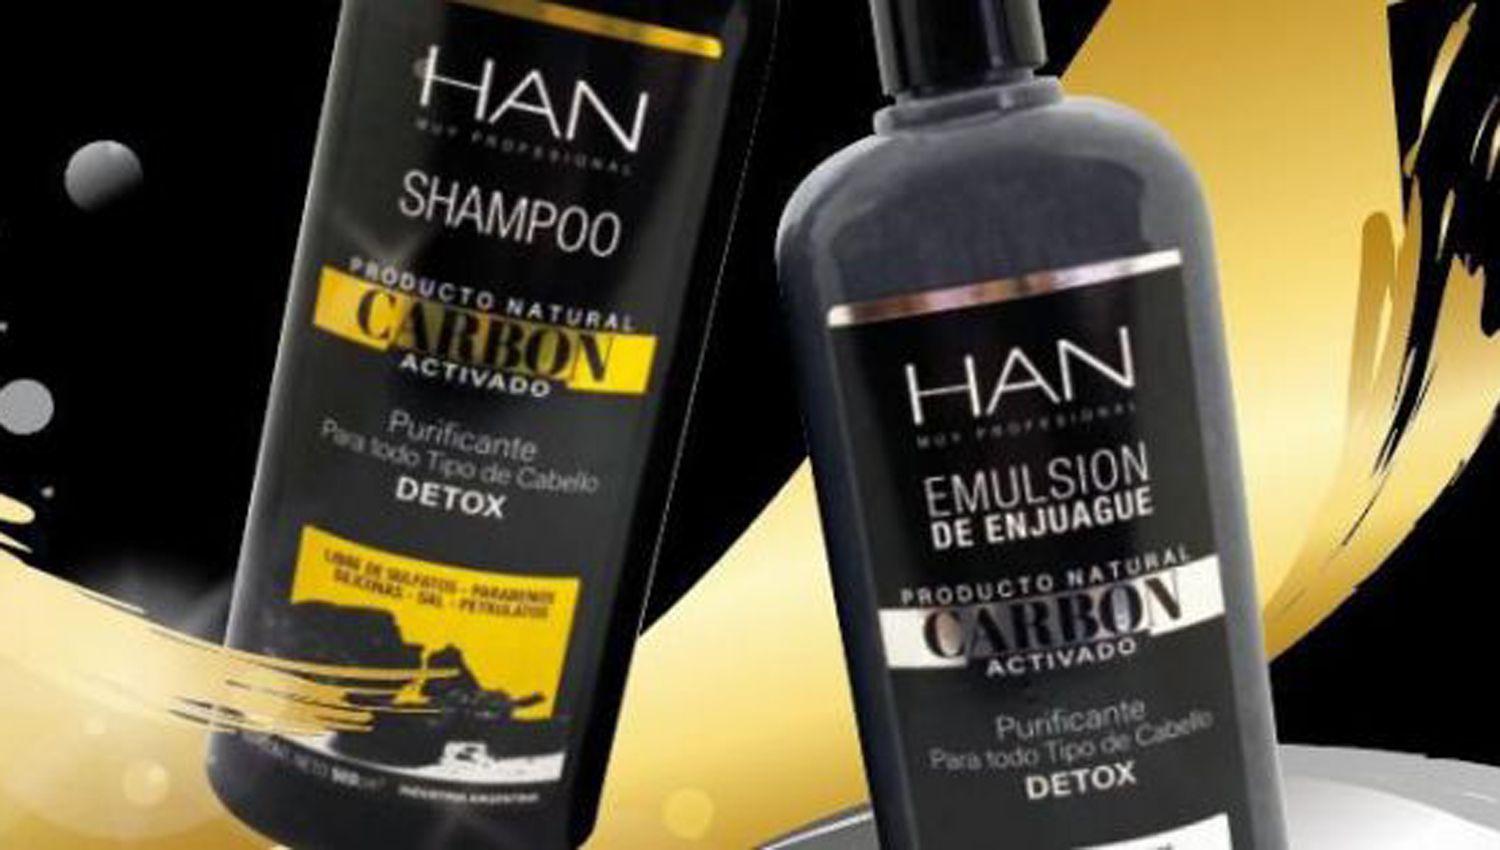 Apostaron por el shampoo vegano y duplicaron sus ventas en pandemia